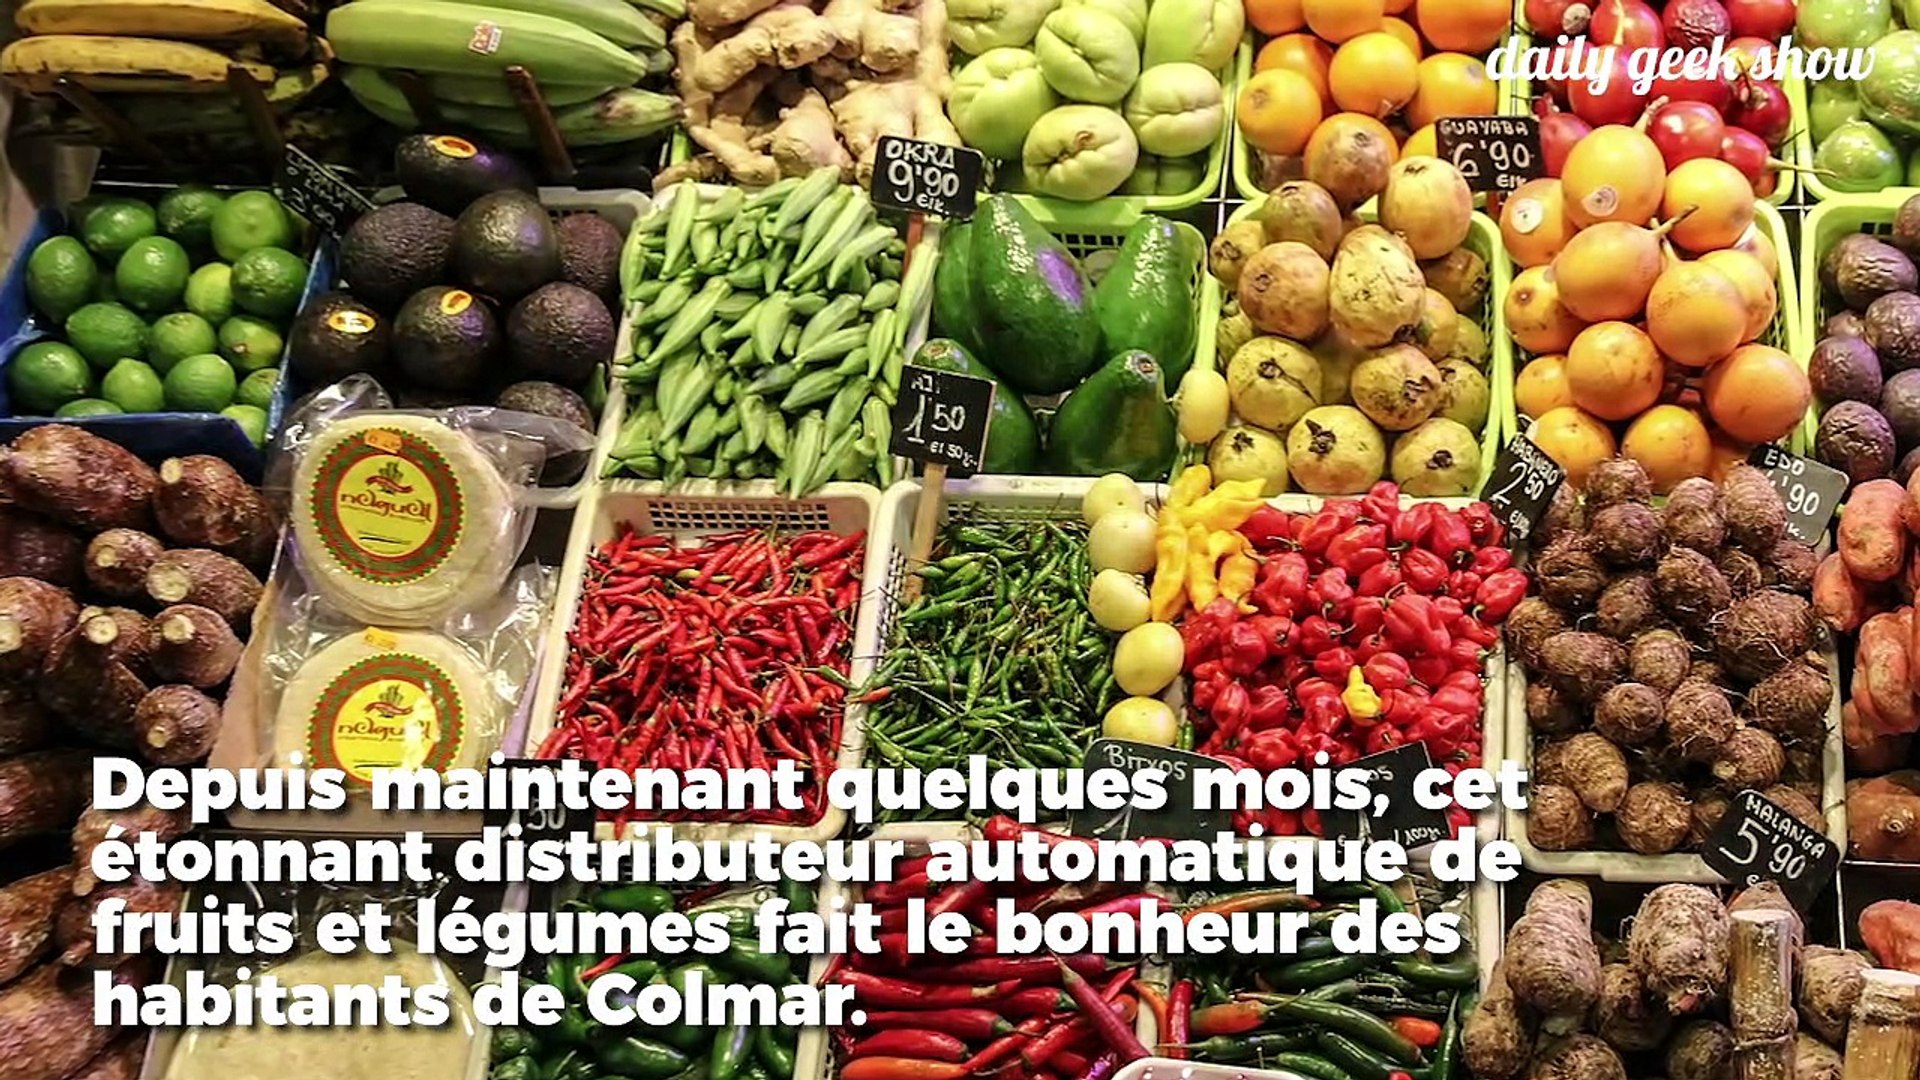 Un distributeur automatique de fruits et légumes locaux - Vidéo Dailymotion